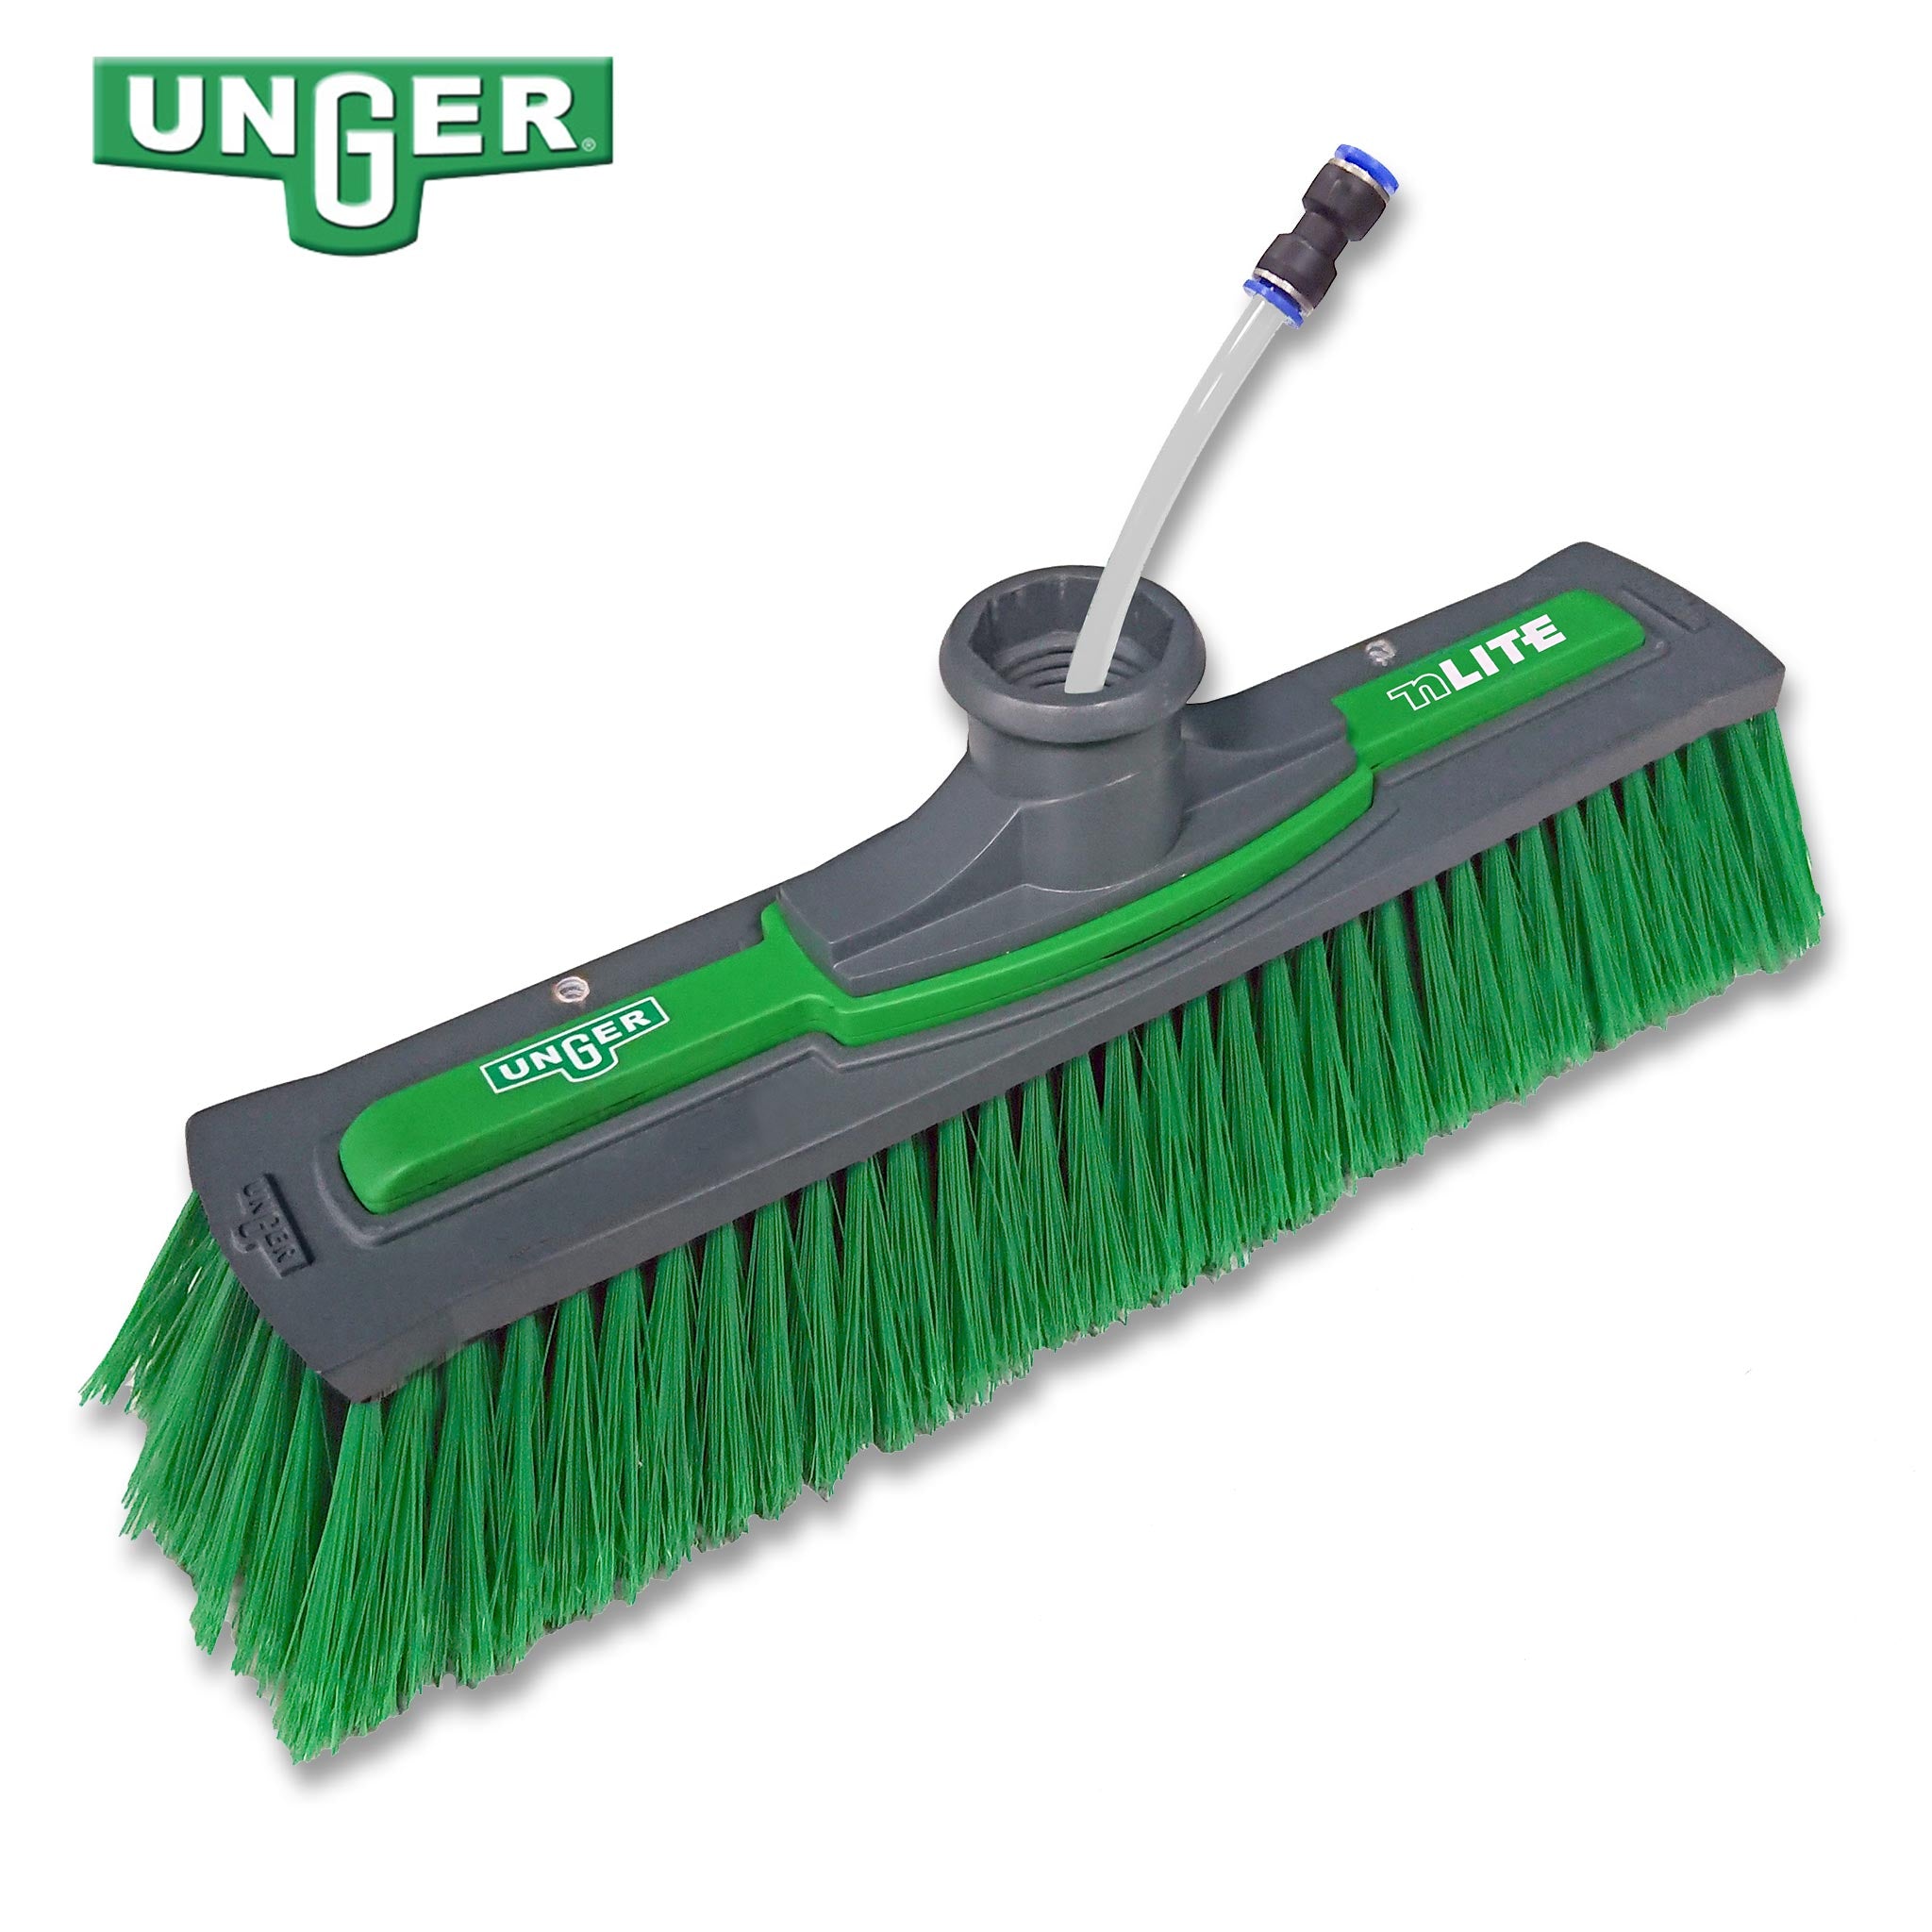 Unger nLite Power Brush – Standard